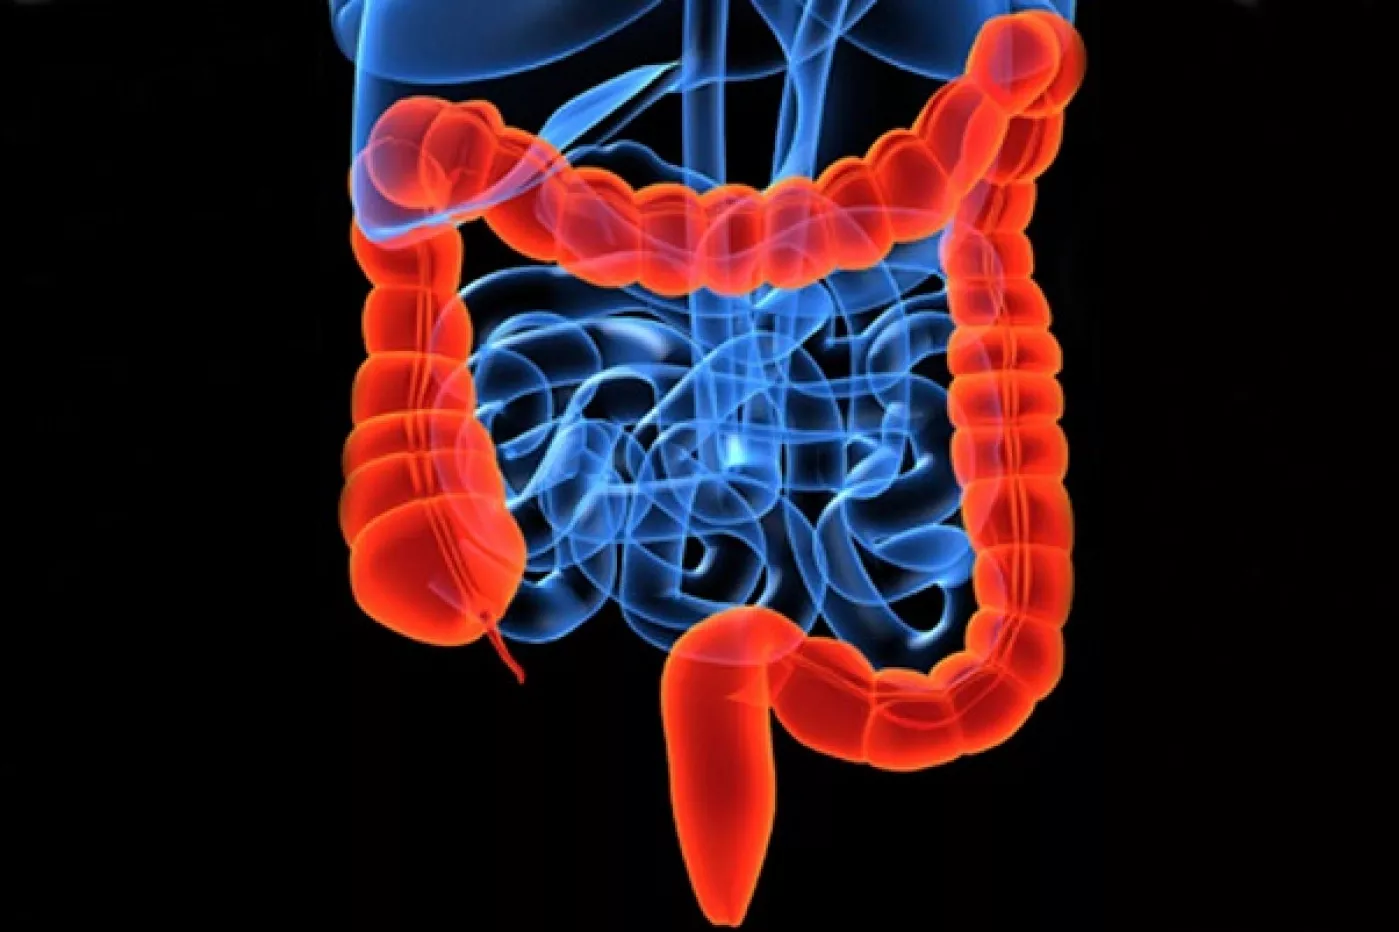 La colitis ulcerosa (CU) y la enfermedad de Crohn (EC) son las principales formas de enfermedad inflamatoria intestinal (EII).